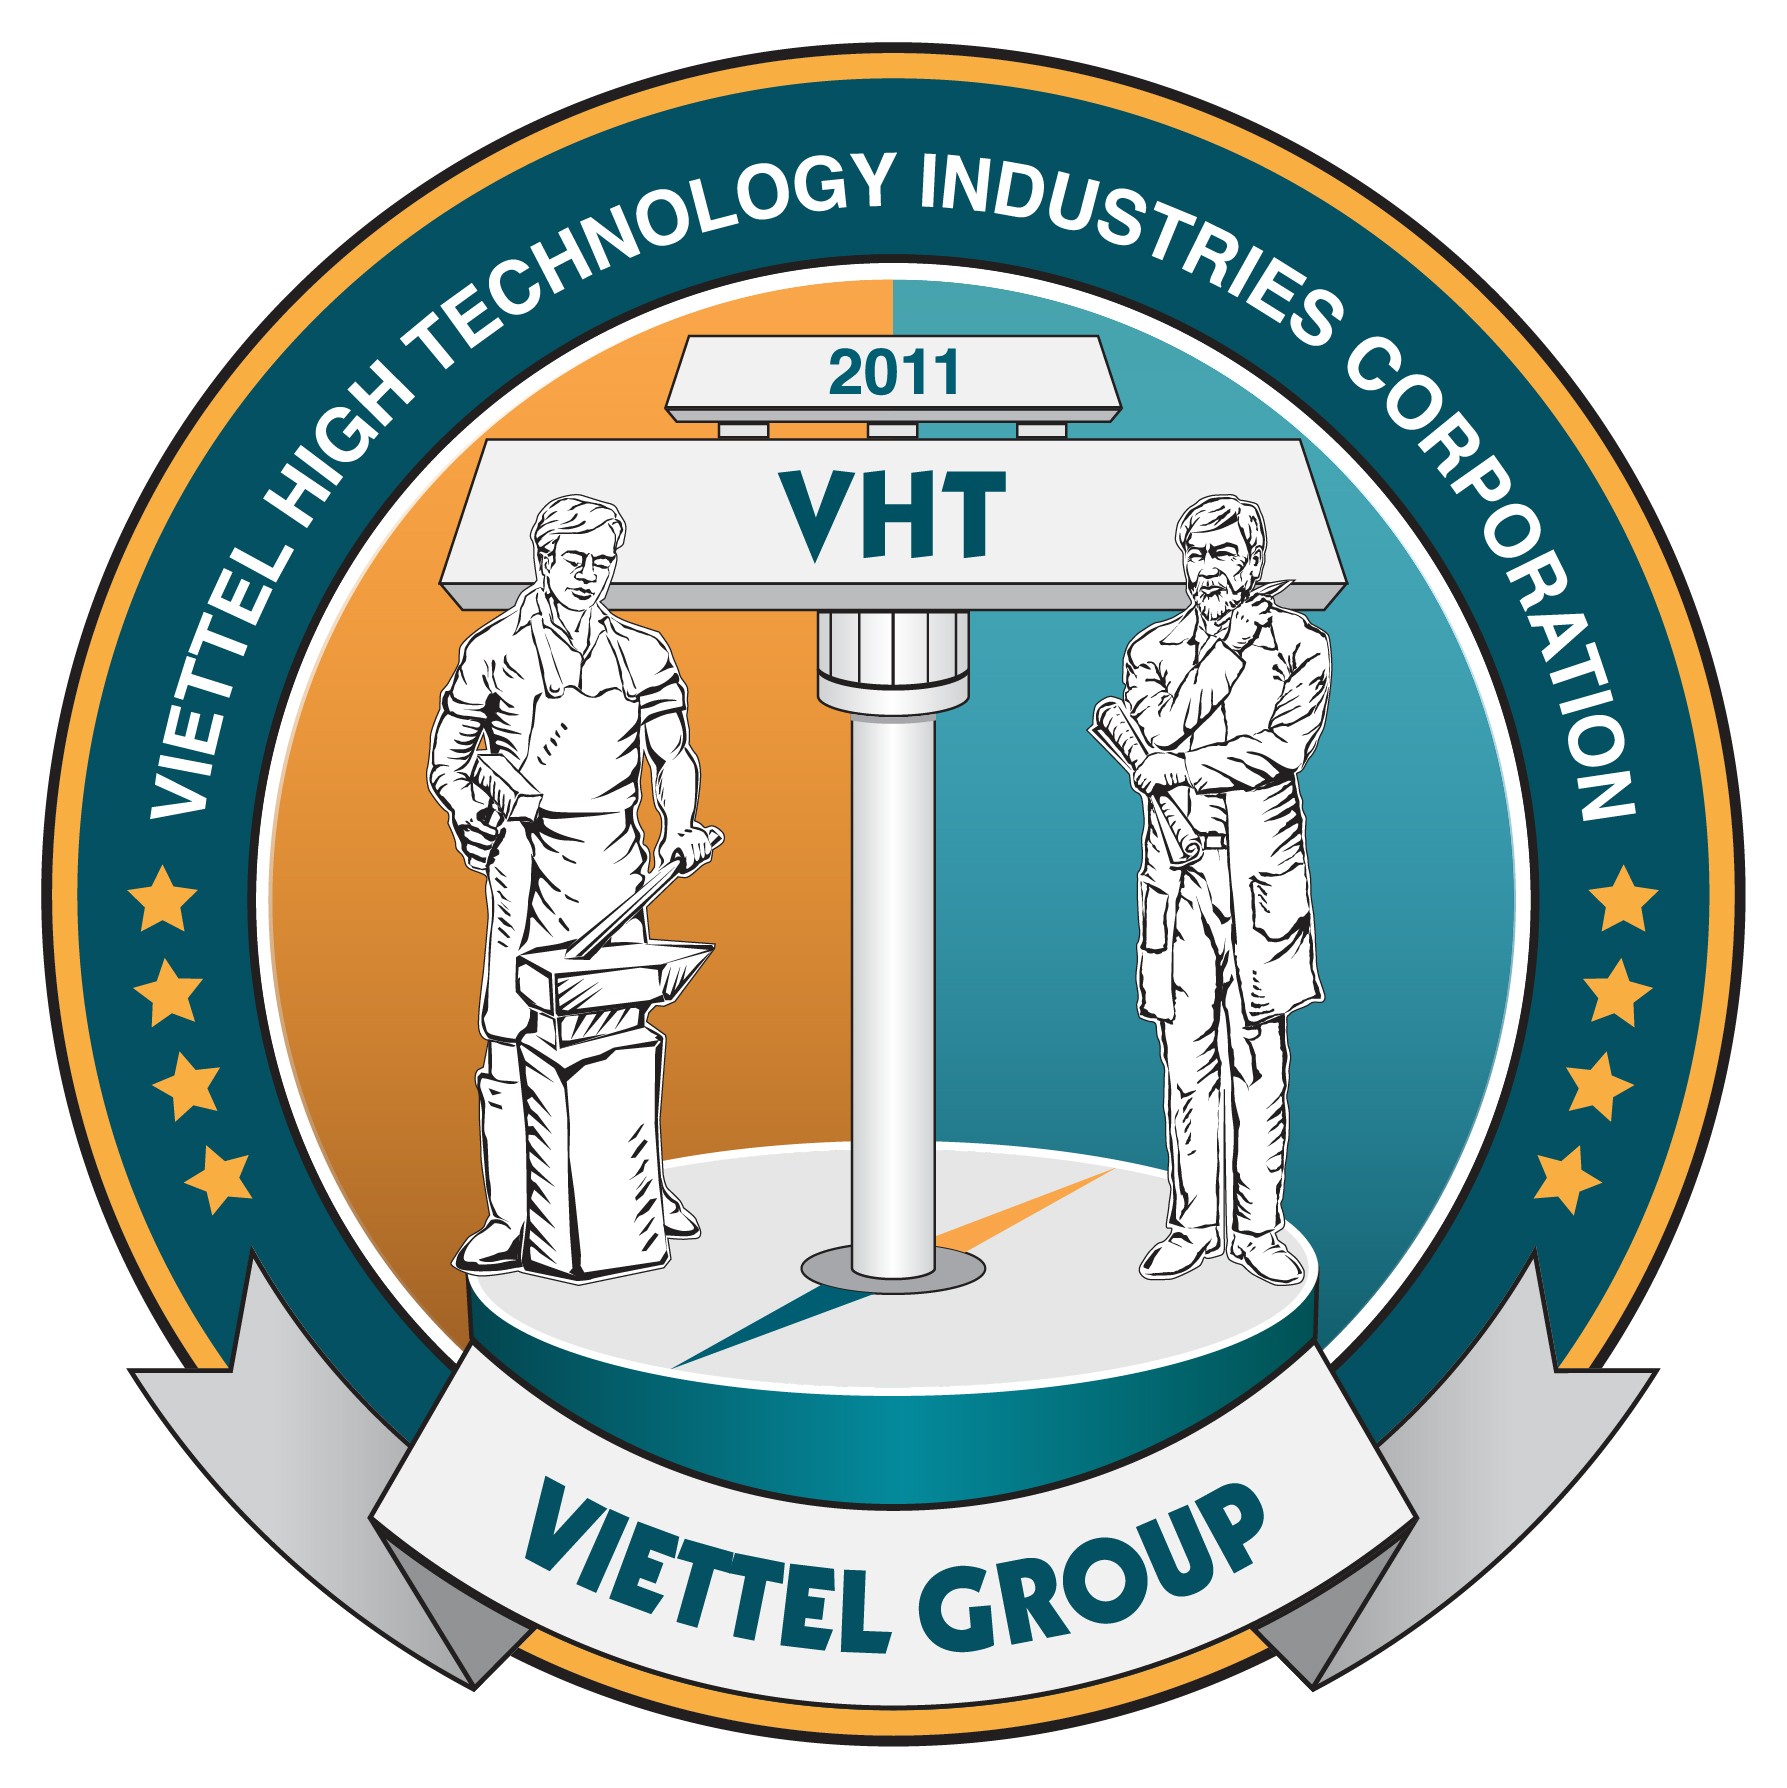 Trung tâm Công nghệ chuyển mạch – Tổng công ty công nghiệp công nghệ cao (VHT)